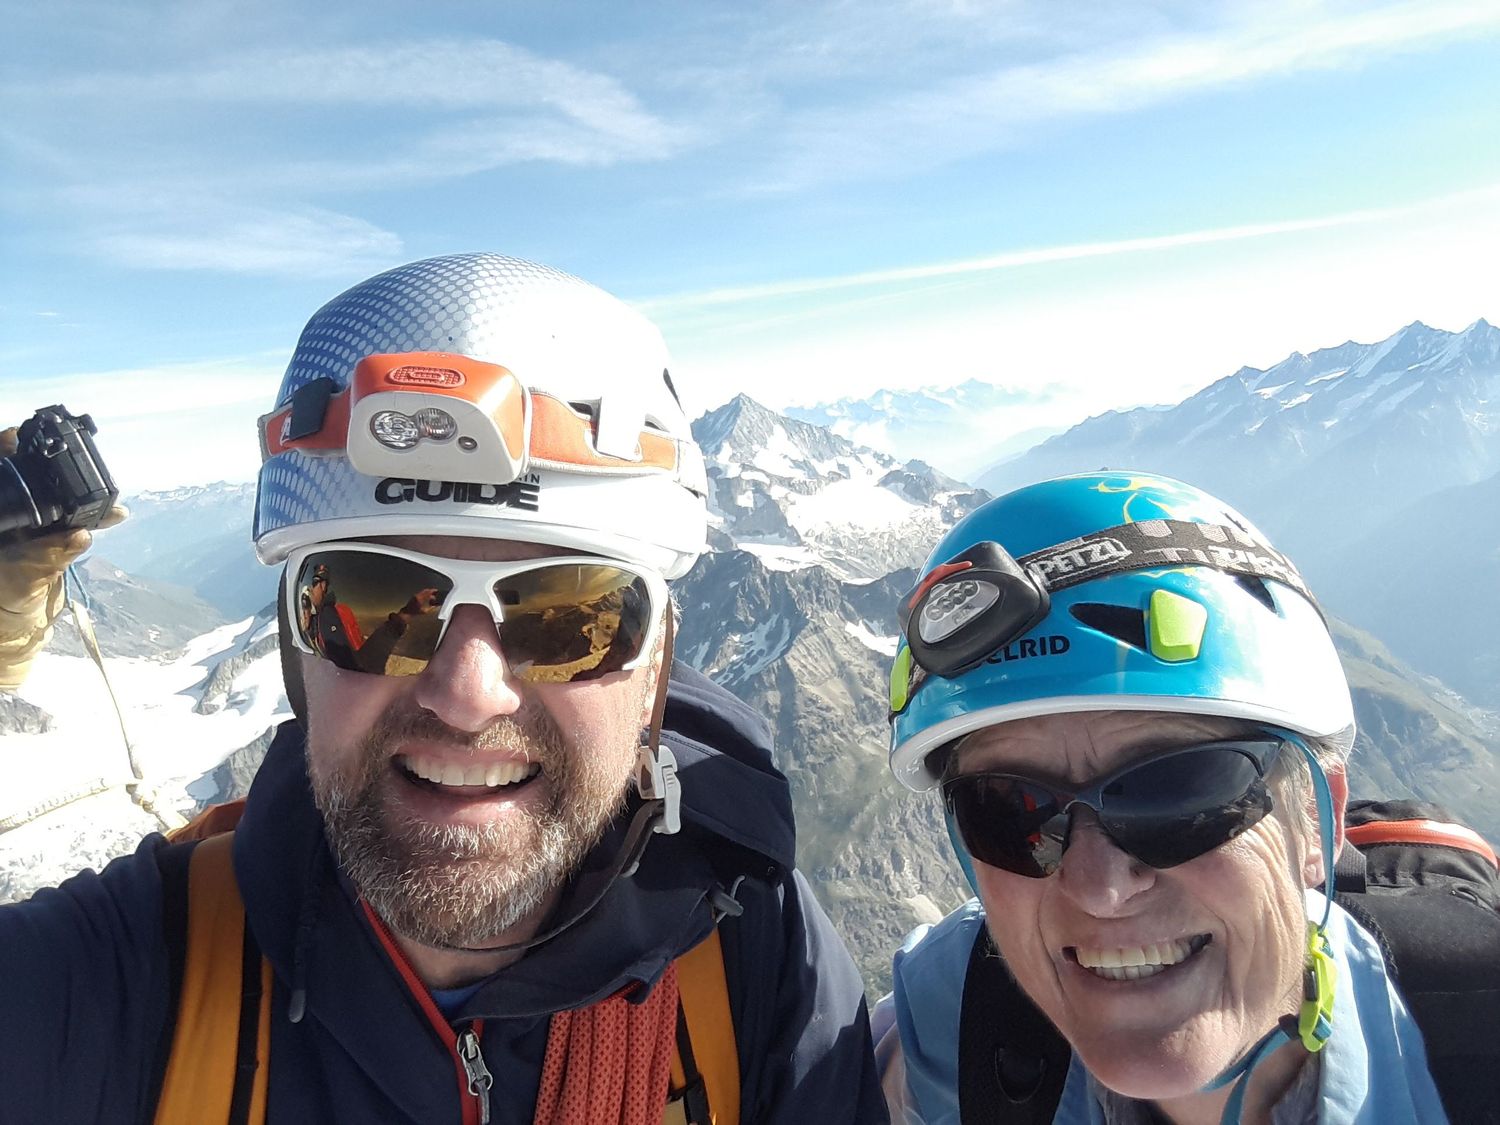  On the summit of the Matterhorn 